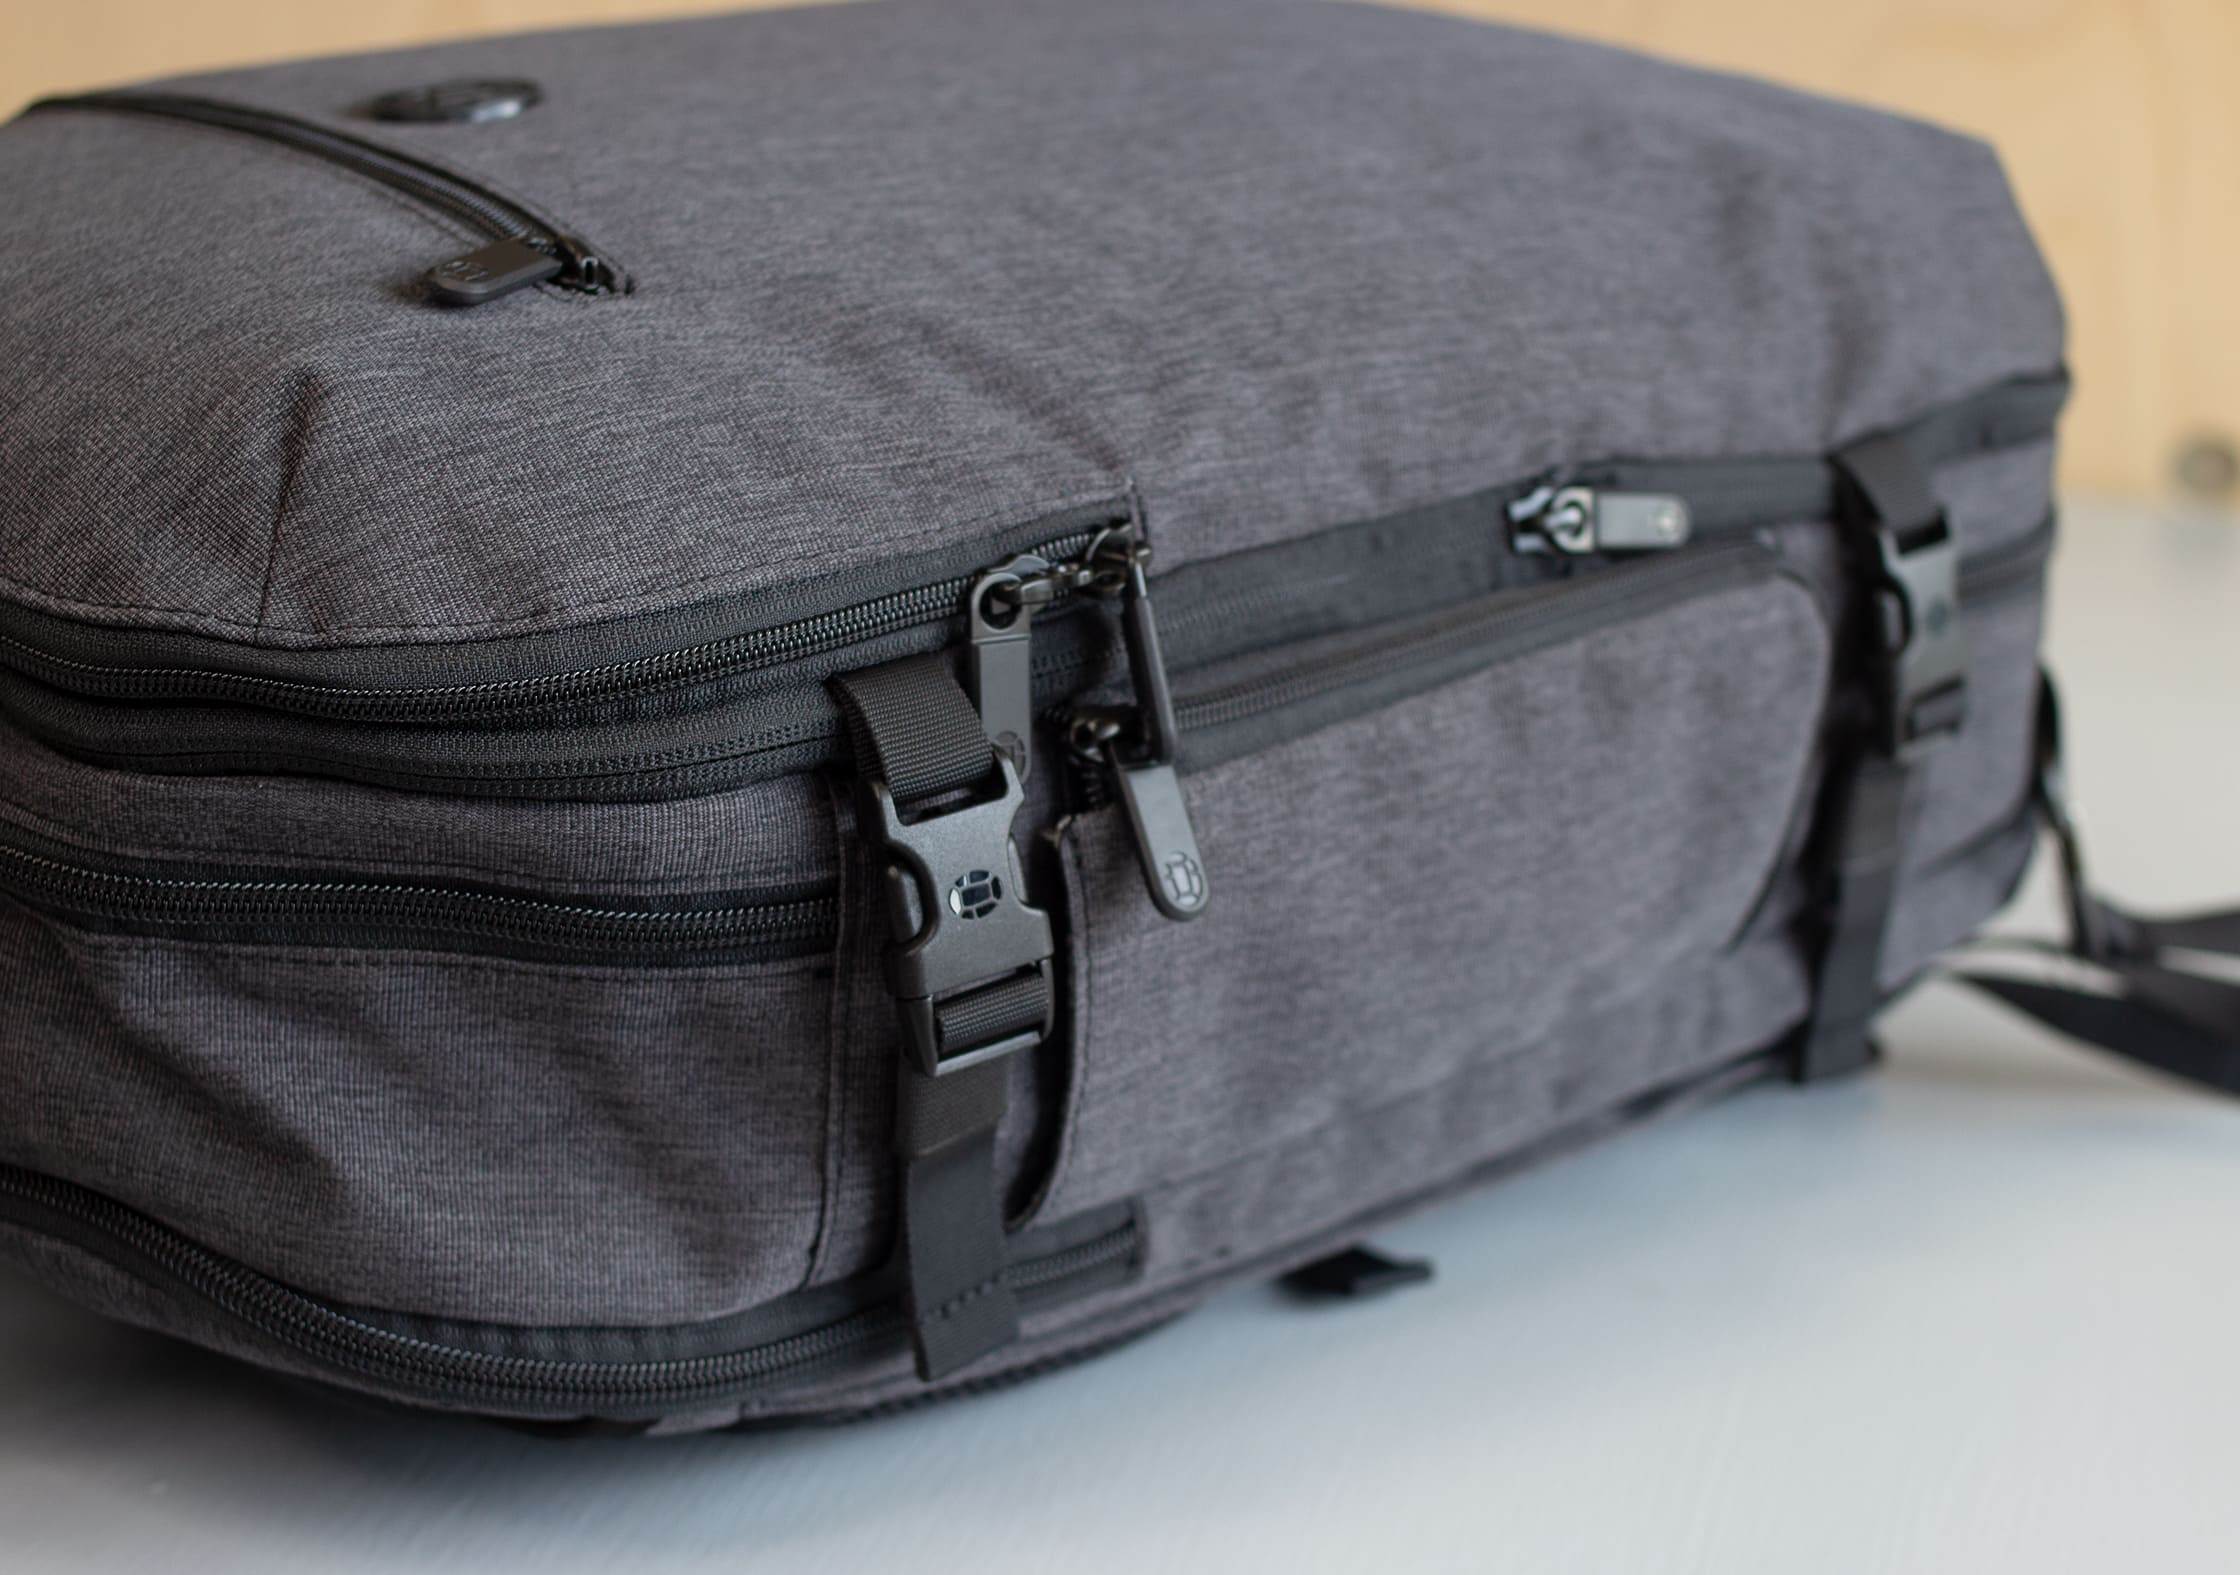 Tortuga Setout Divide Backpack Compression Straps